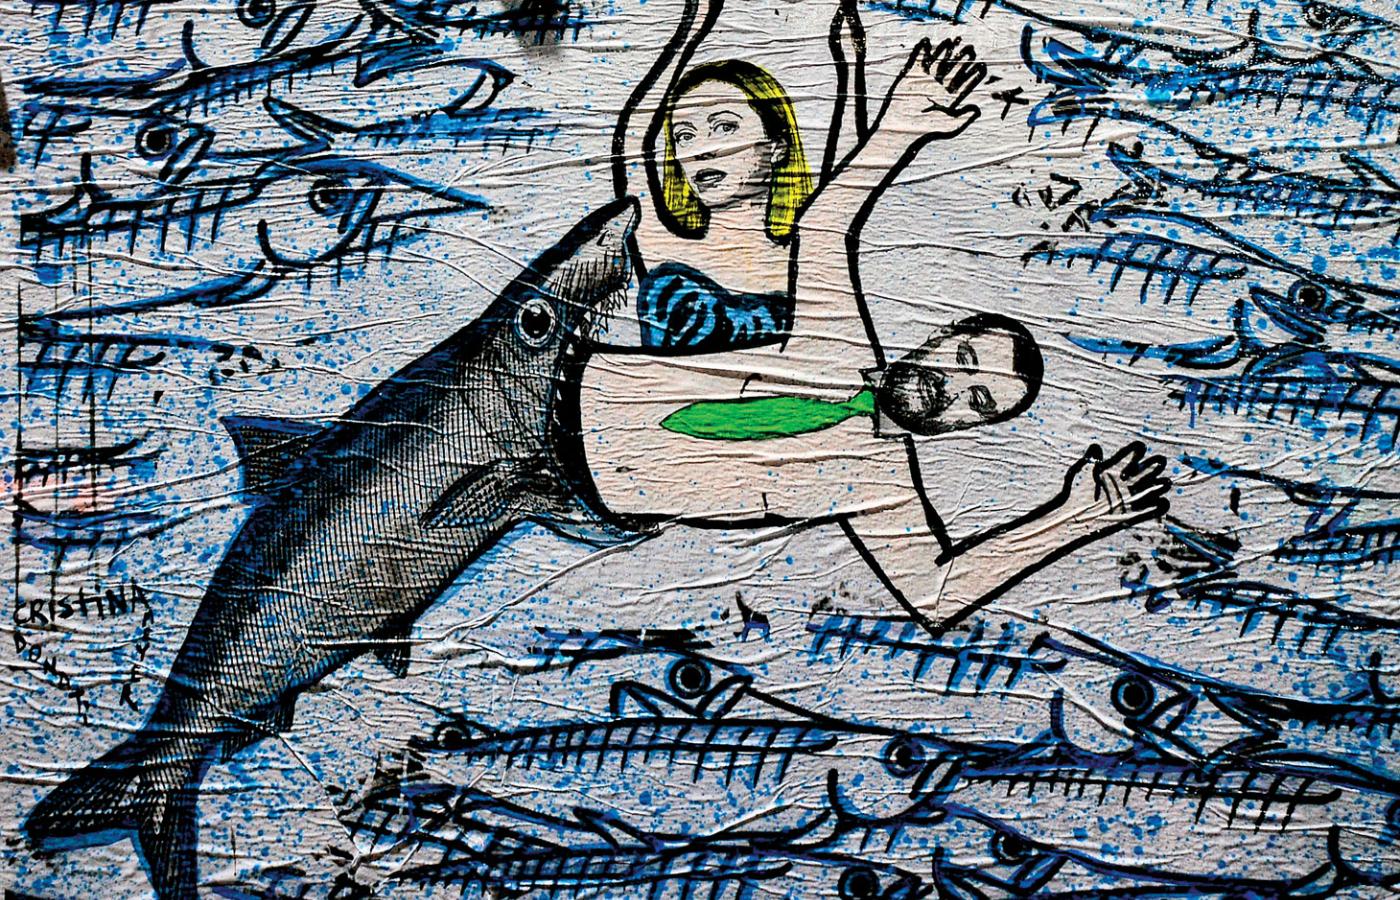 Rozgniewane sardynki zjadają Salviniego na graffiti Cristiny Donati Meyer w Mediolanie.